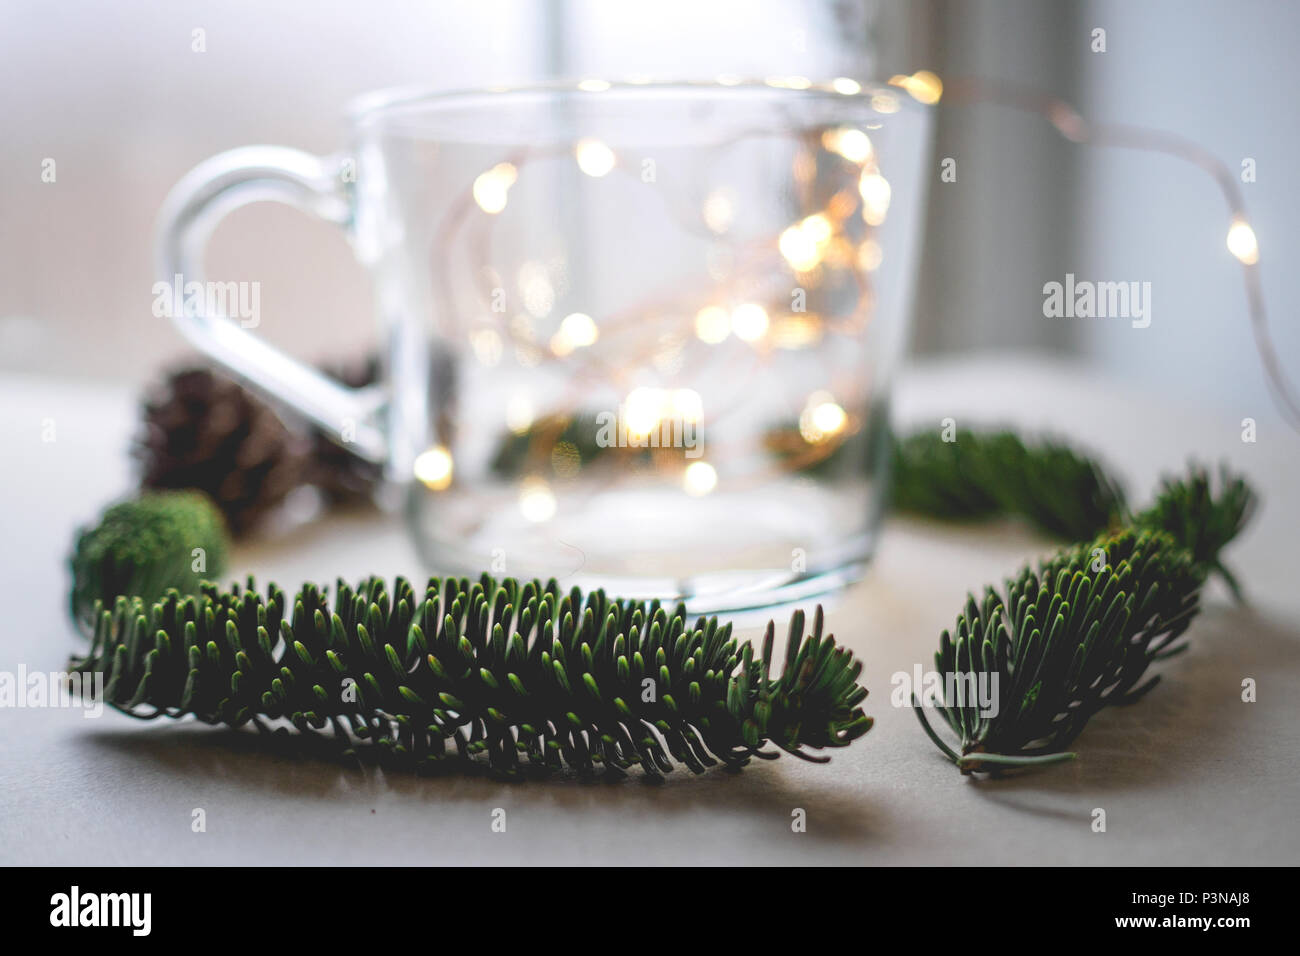 Nahaufnahme einer unscharfen Glas Becher mit warmen Weihnachtsbeleuchtung innen durch Tannenzapfen und Zweige auf einen weißen Tisch umgeben. Weihnachten Konzept. Stockfoto